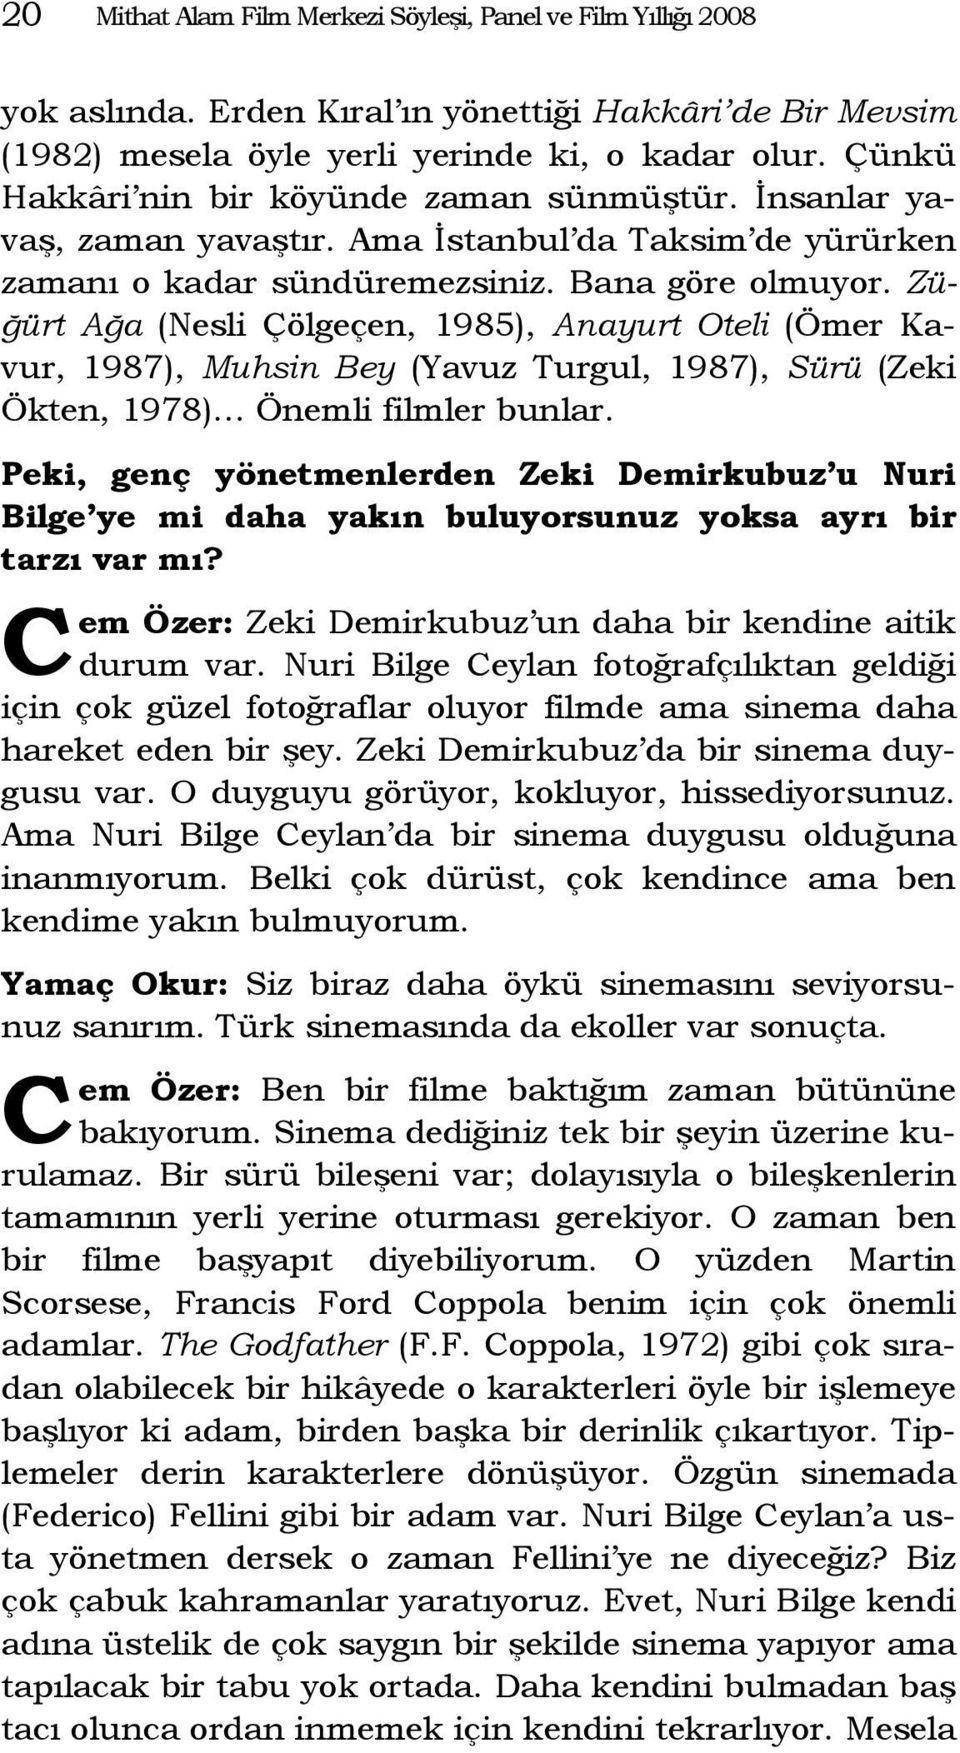 Züğürt Ağa (Nesli Çölgeçen, 1985), Anayurt Oteli (Ömer Kavur, 1987), Muhsin Bey (Yavuz Turgul, 1987), Sürü (Zeki Ökten, 1978) Önemli filmler bunlar.